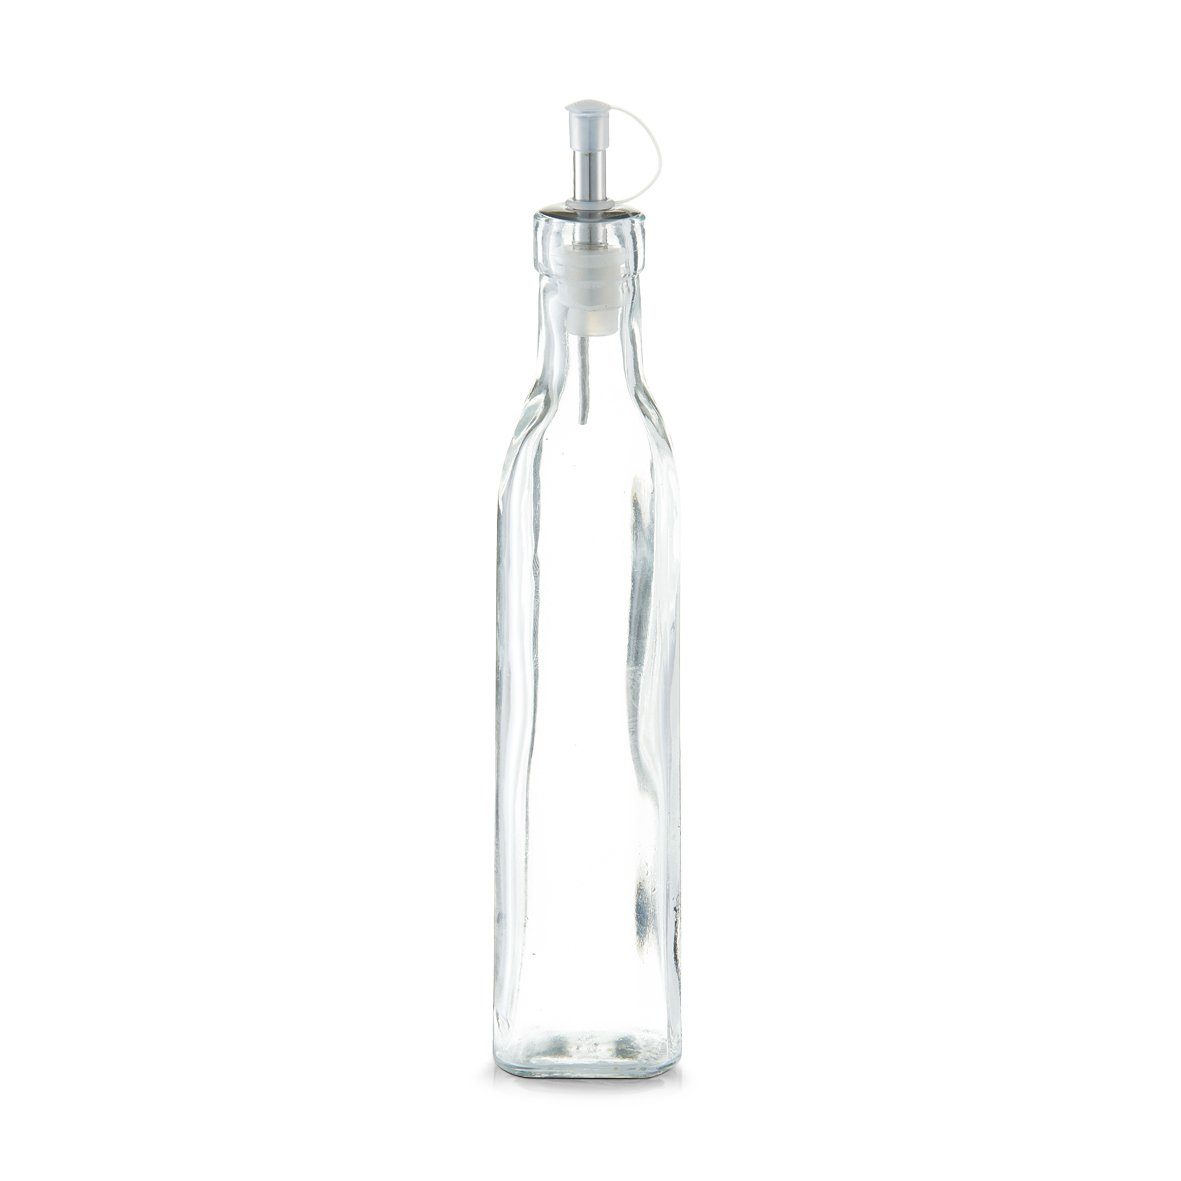 Zeller Present Ölspender Essig-/Ölflasche, 270 ml, Glas, transparent, 4,9 x 4,9 x 25 cm